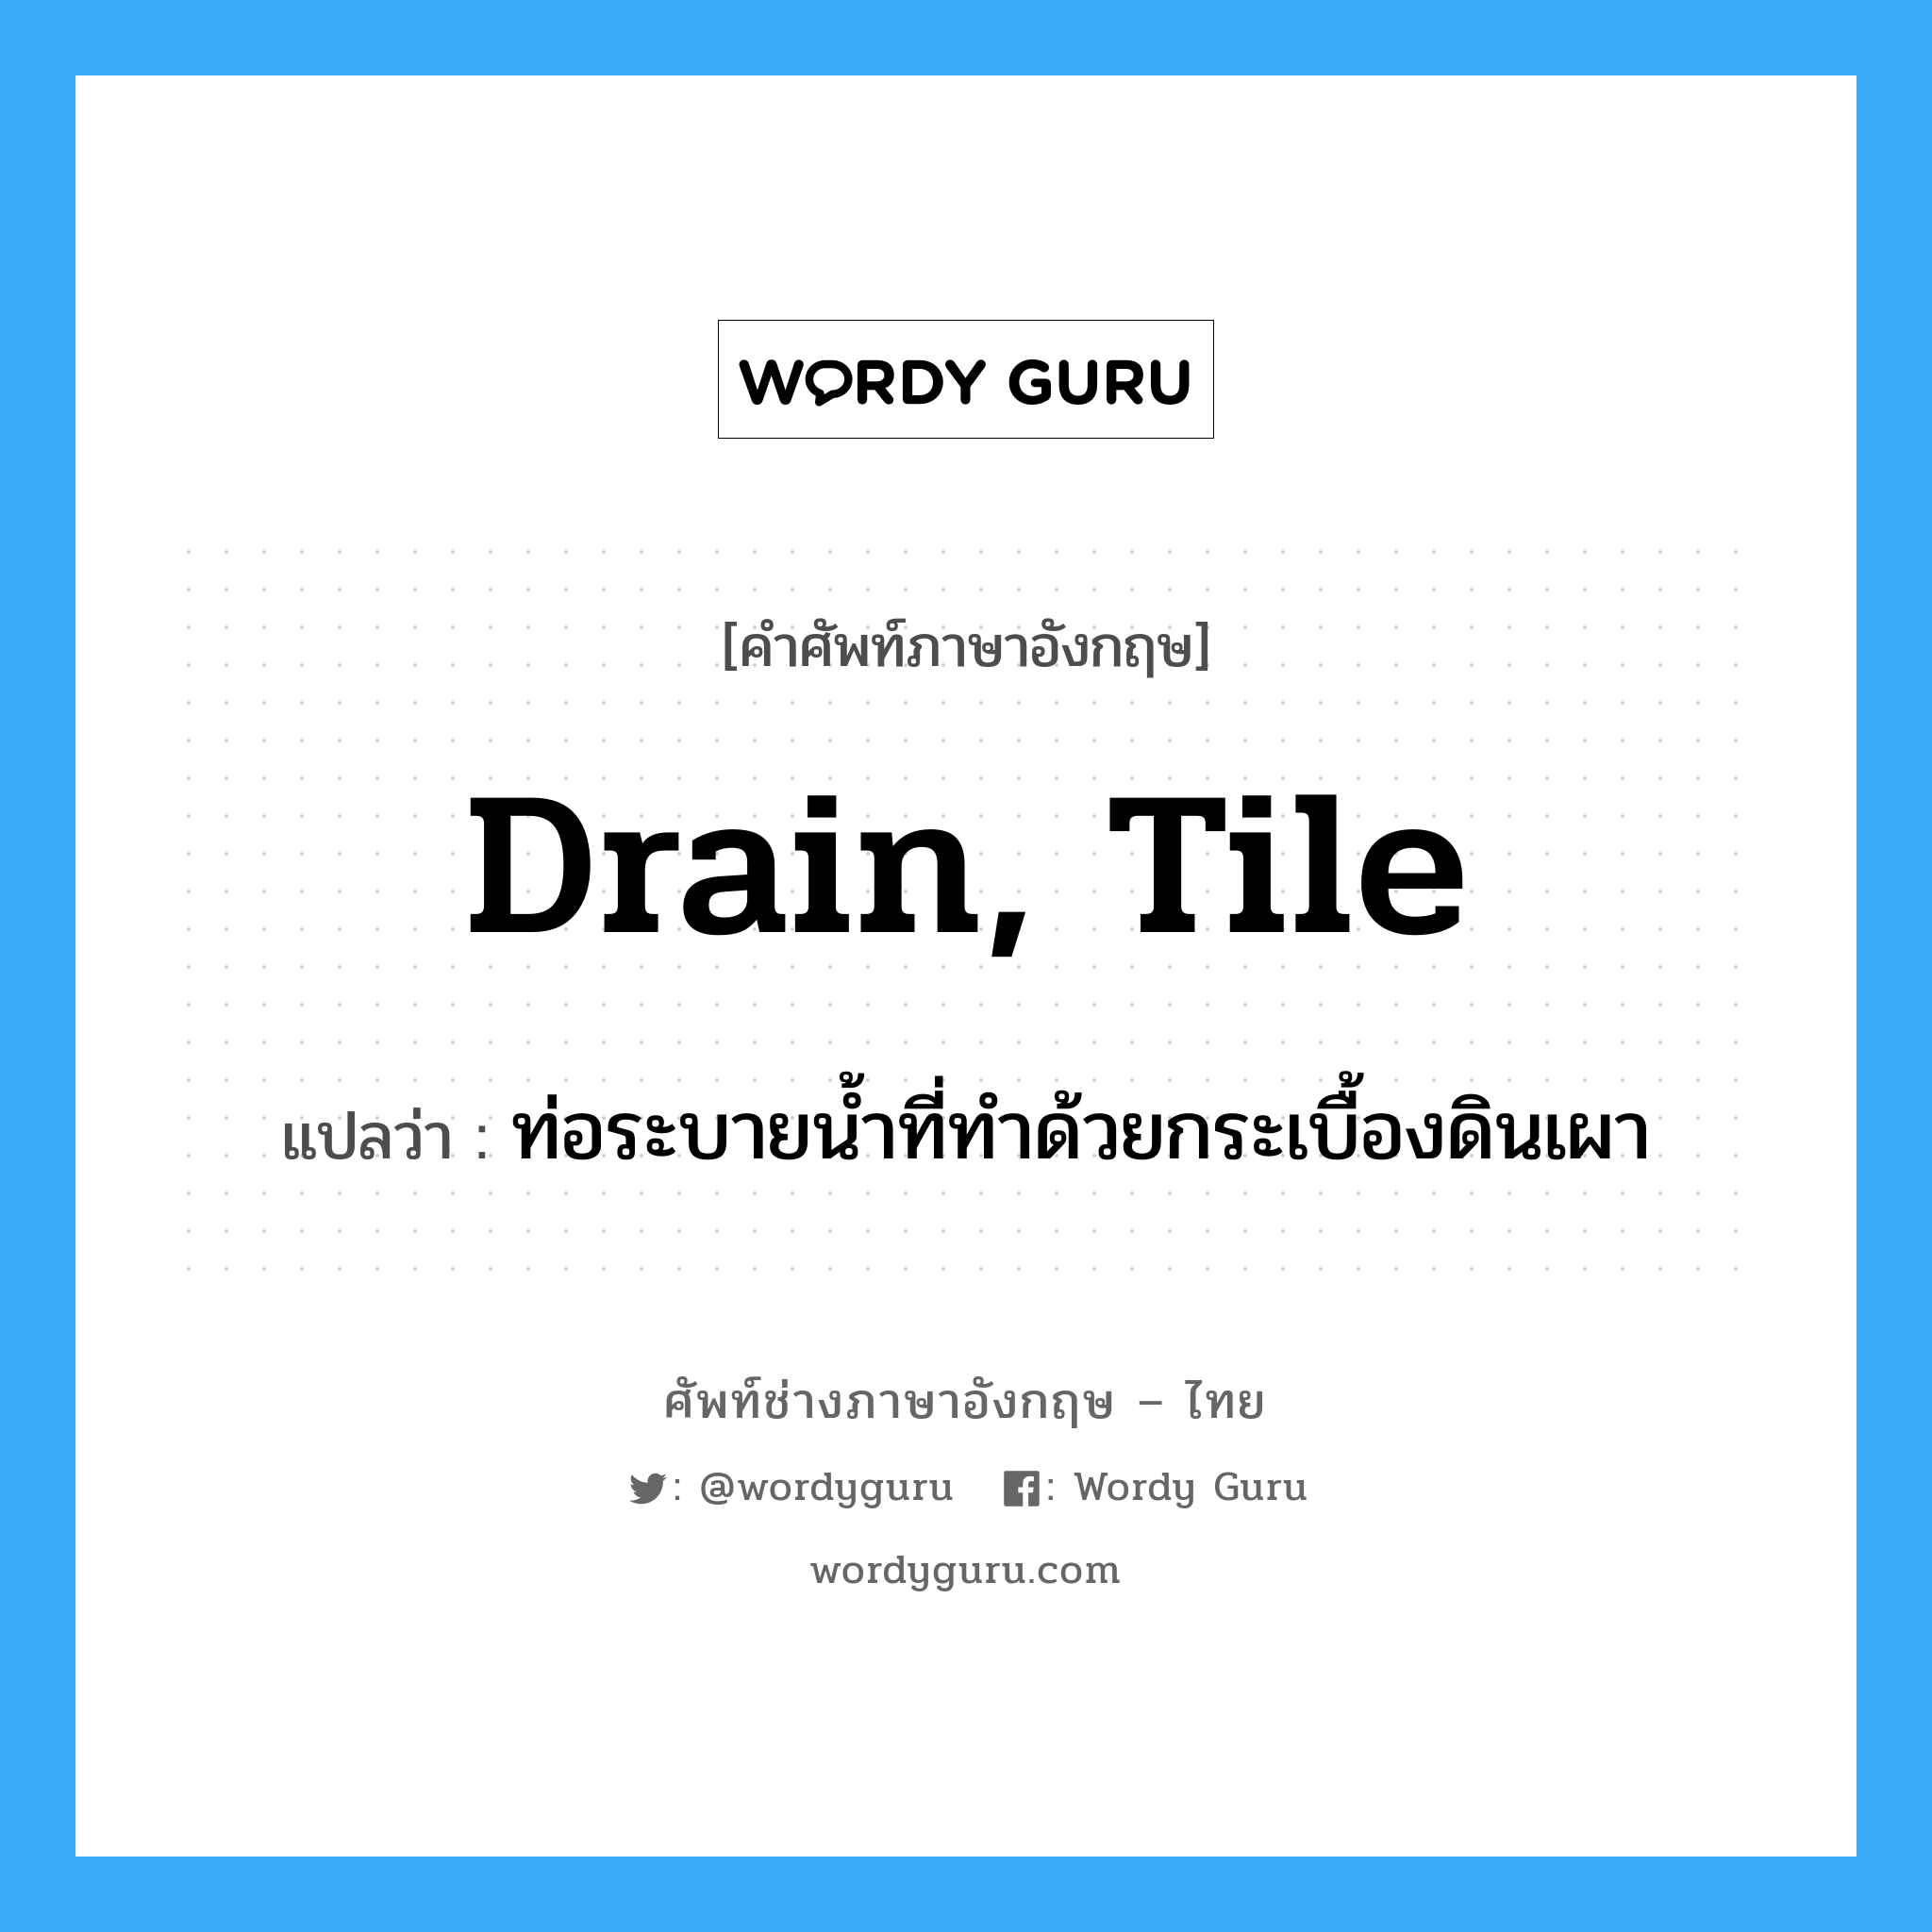 drain, tile แปลว่า?, คำศัพท์ช่างภาษาอังกฤษ - ไทย drain, tile คำศัพท์ภาษาอังกฤษ drain, tile แปลว่า ท่อระบายน้ำที่ทำด้วยกระเบื้องดินเผา